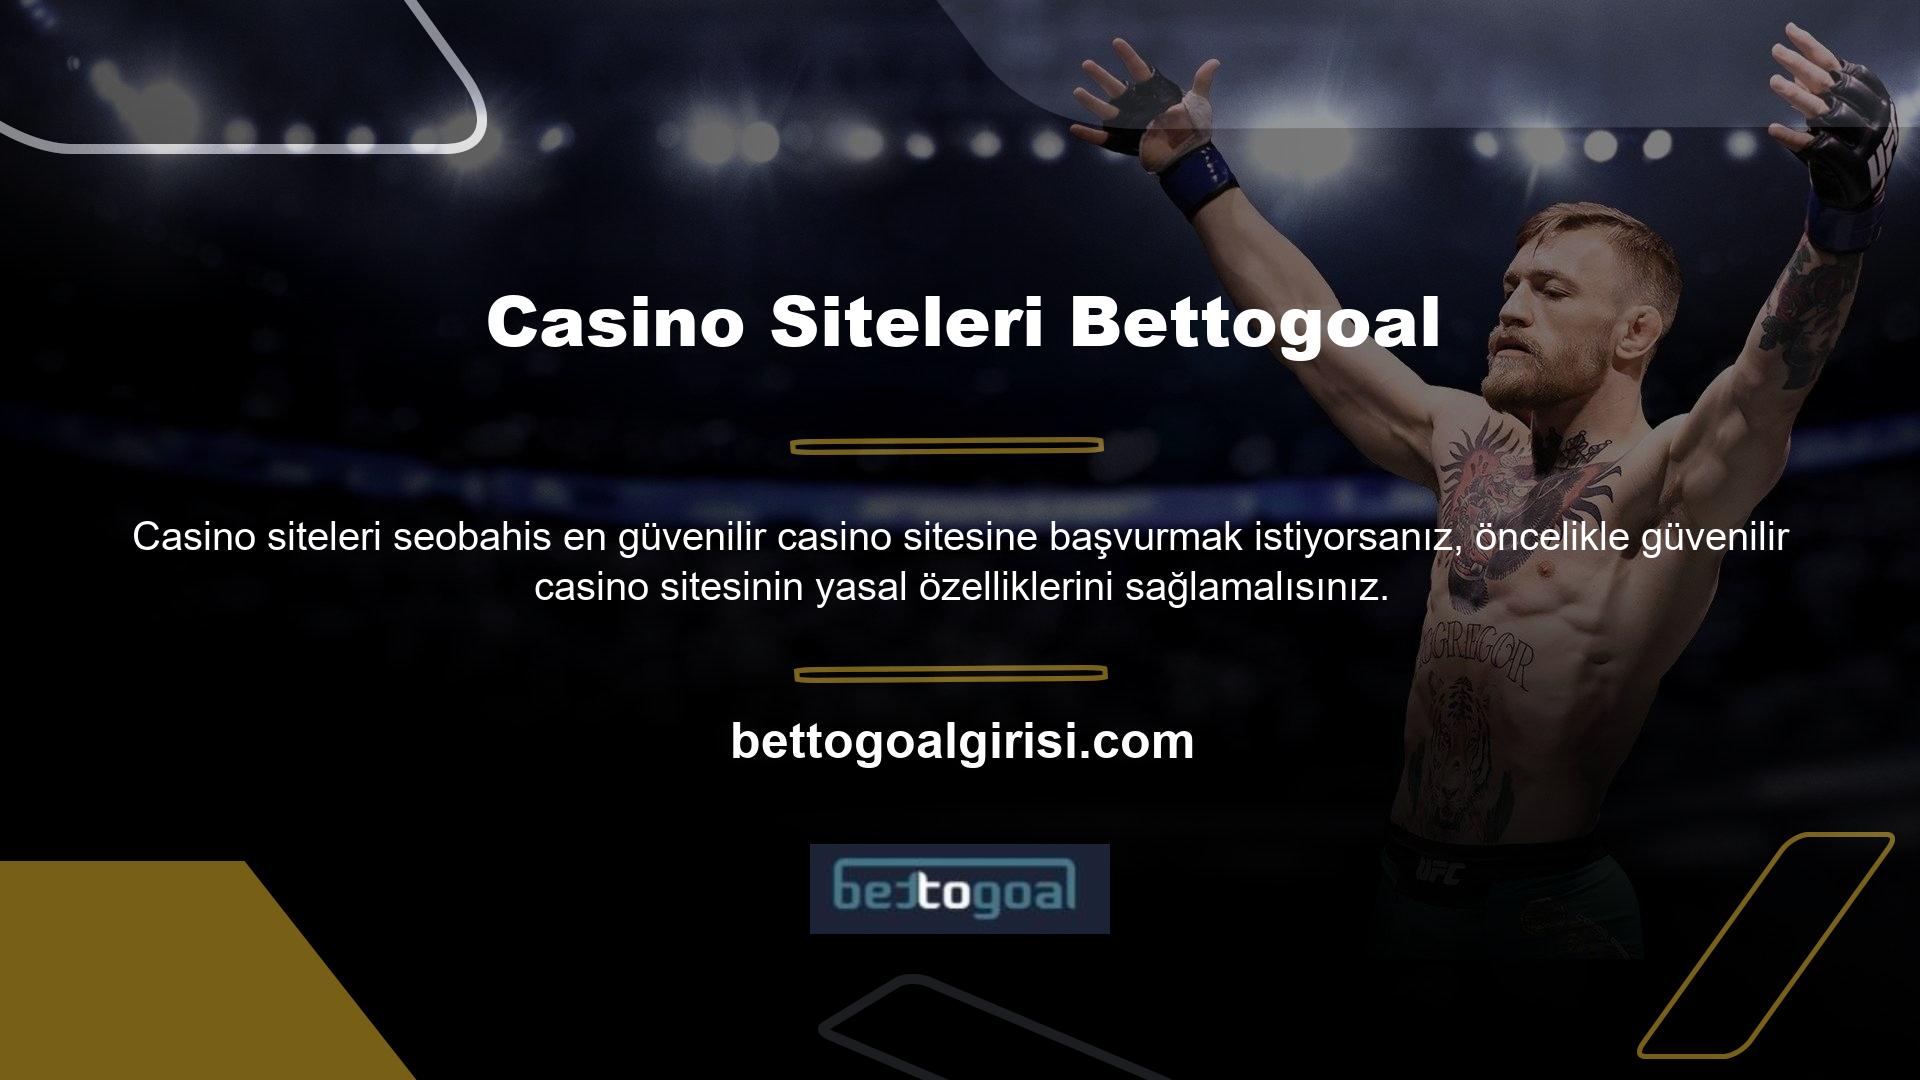 Bettogoal Casino web sitesinde hesap açmak, para yatırmak veya oyun oynamak için lütfen önce Şirket Bilgilerine bakın